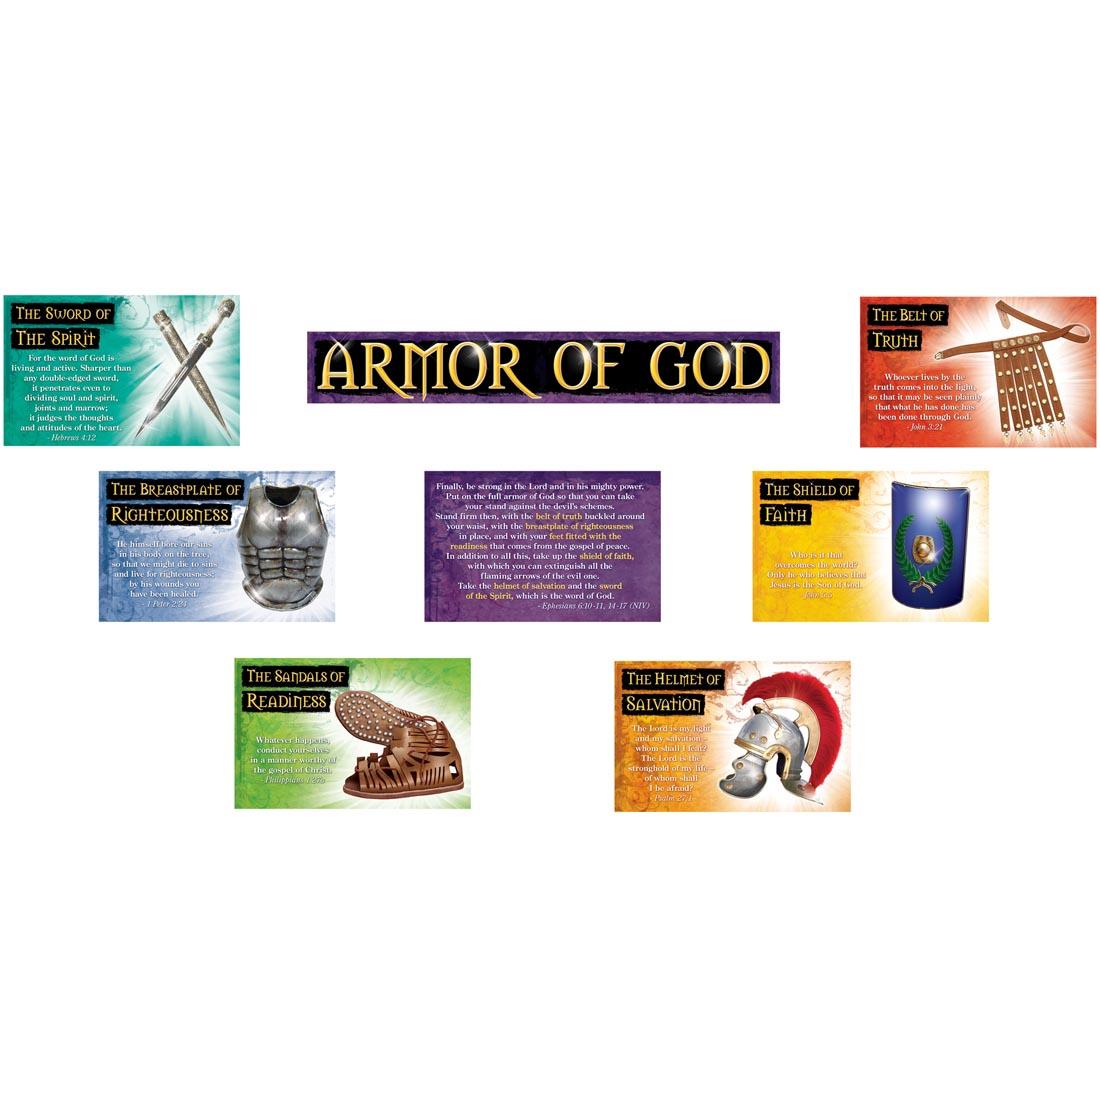 poster set describing the armor of God